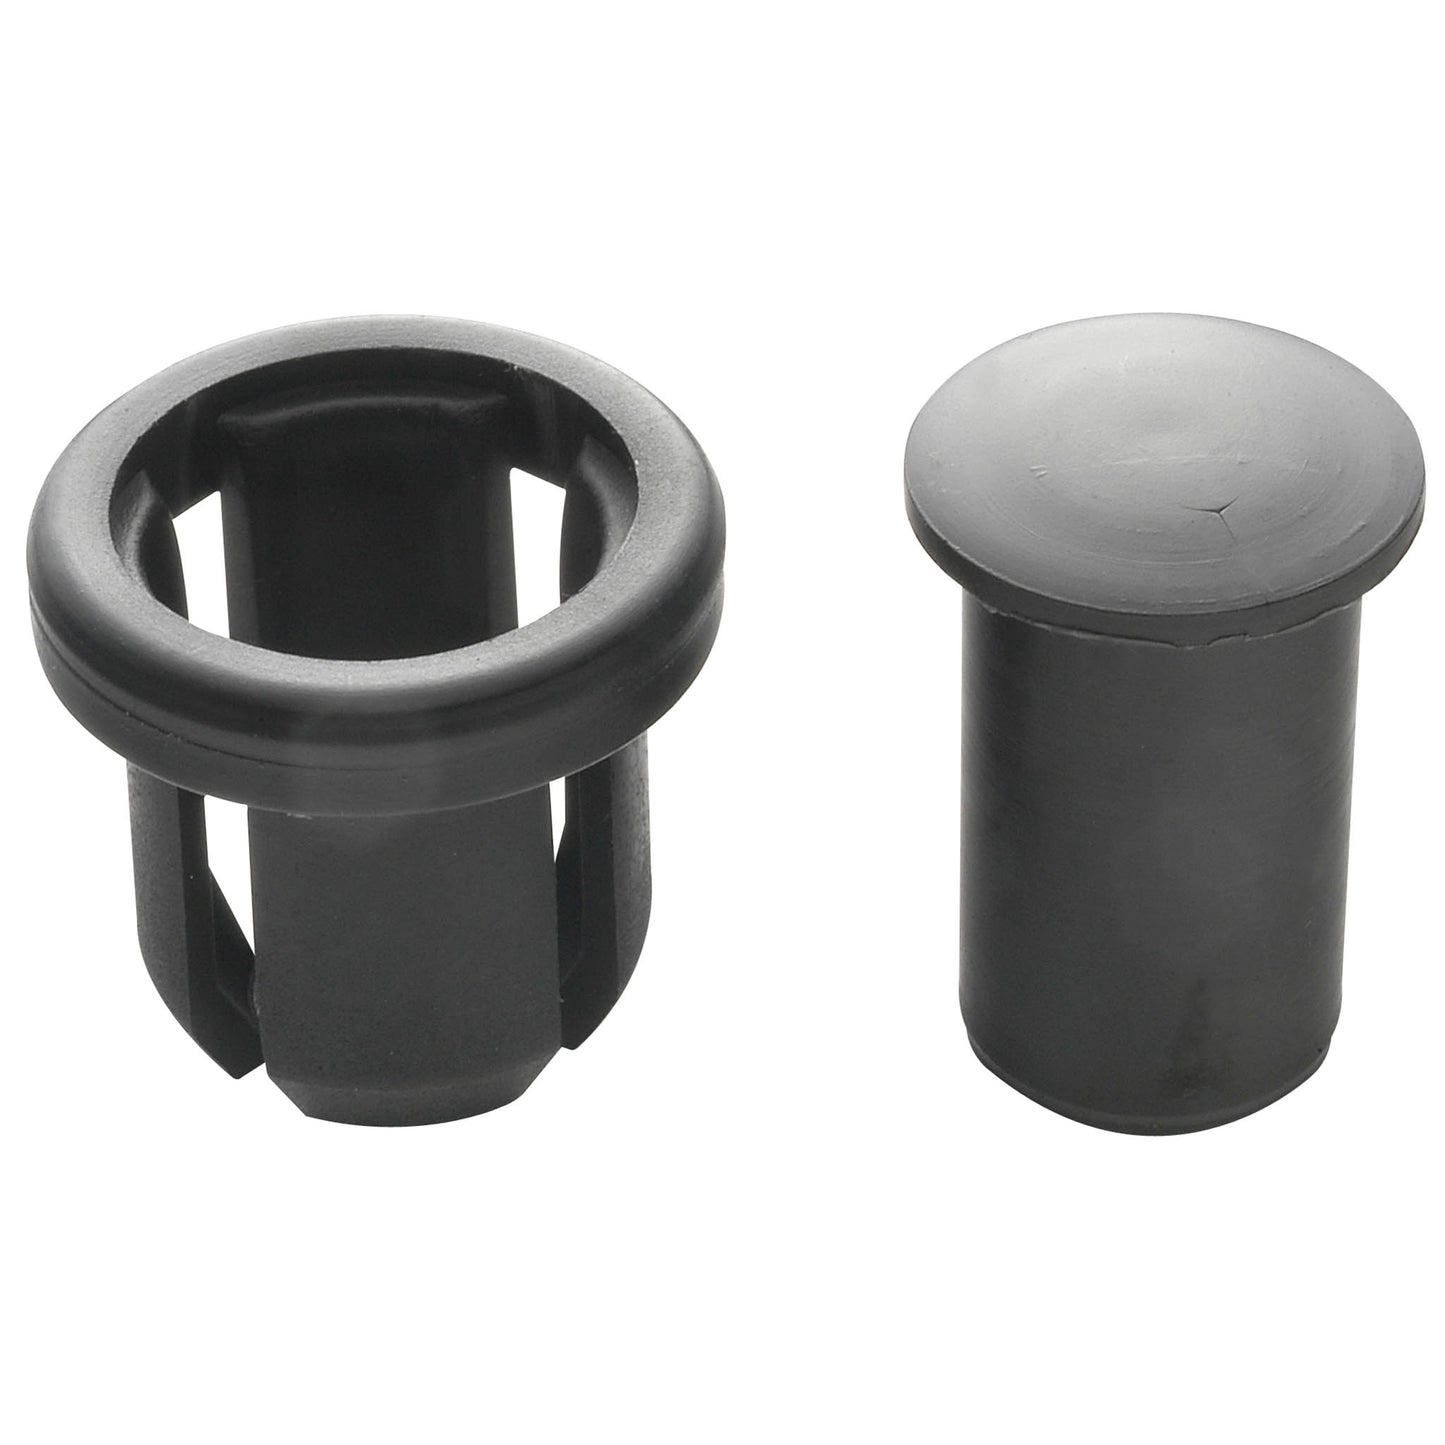 Black plastic handlebar plug